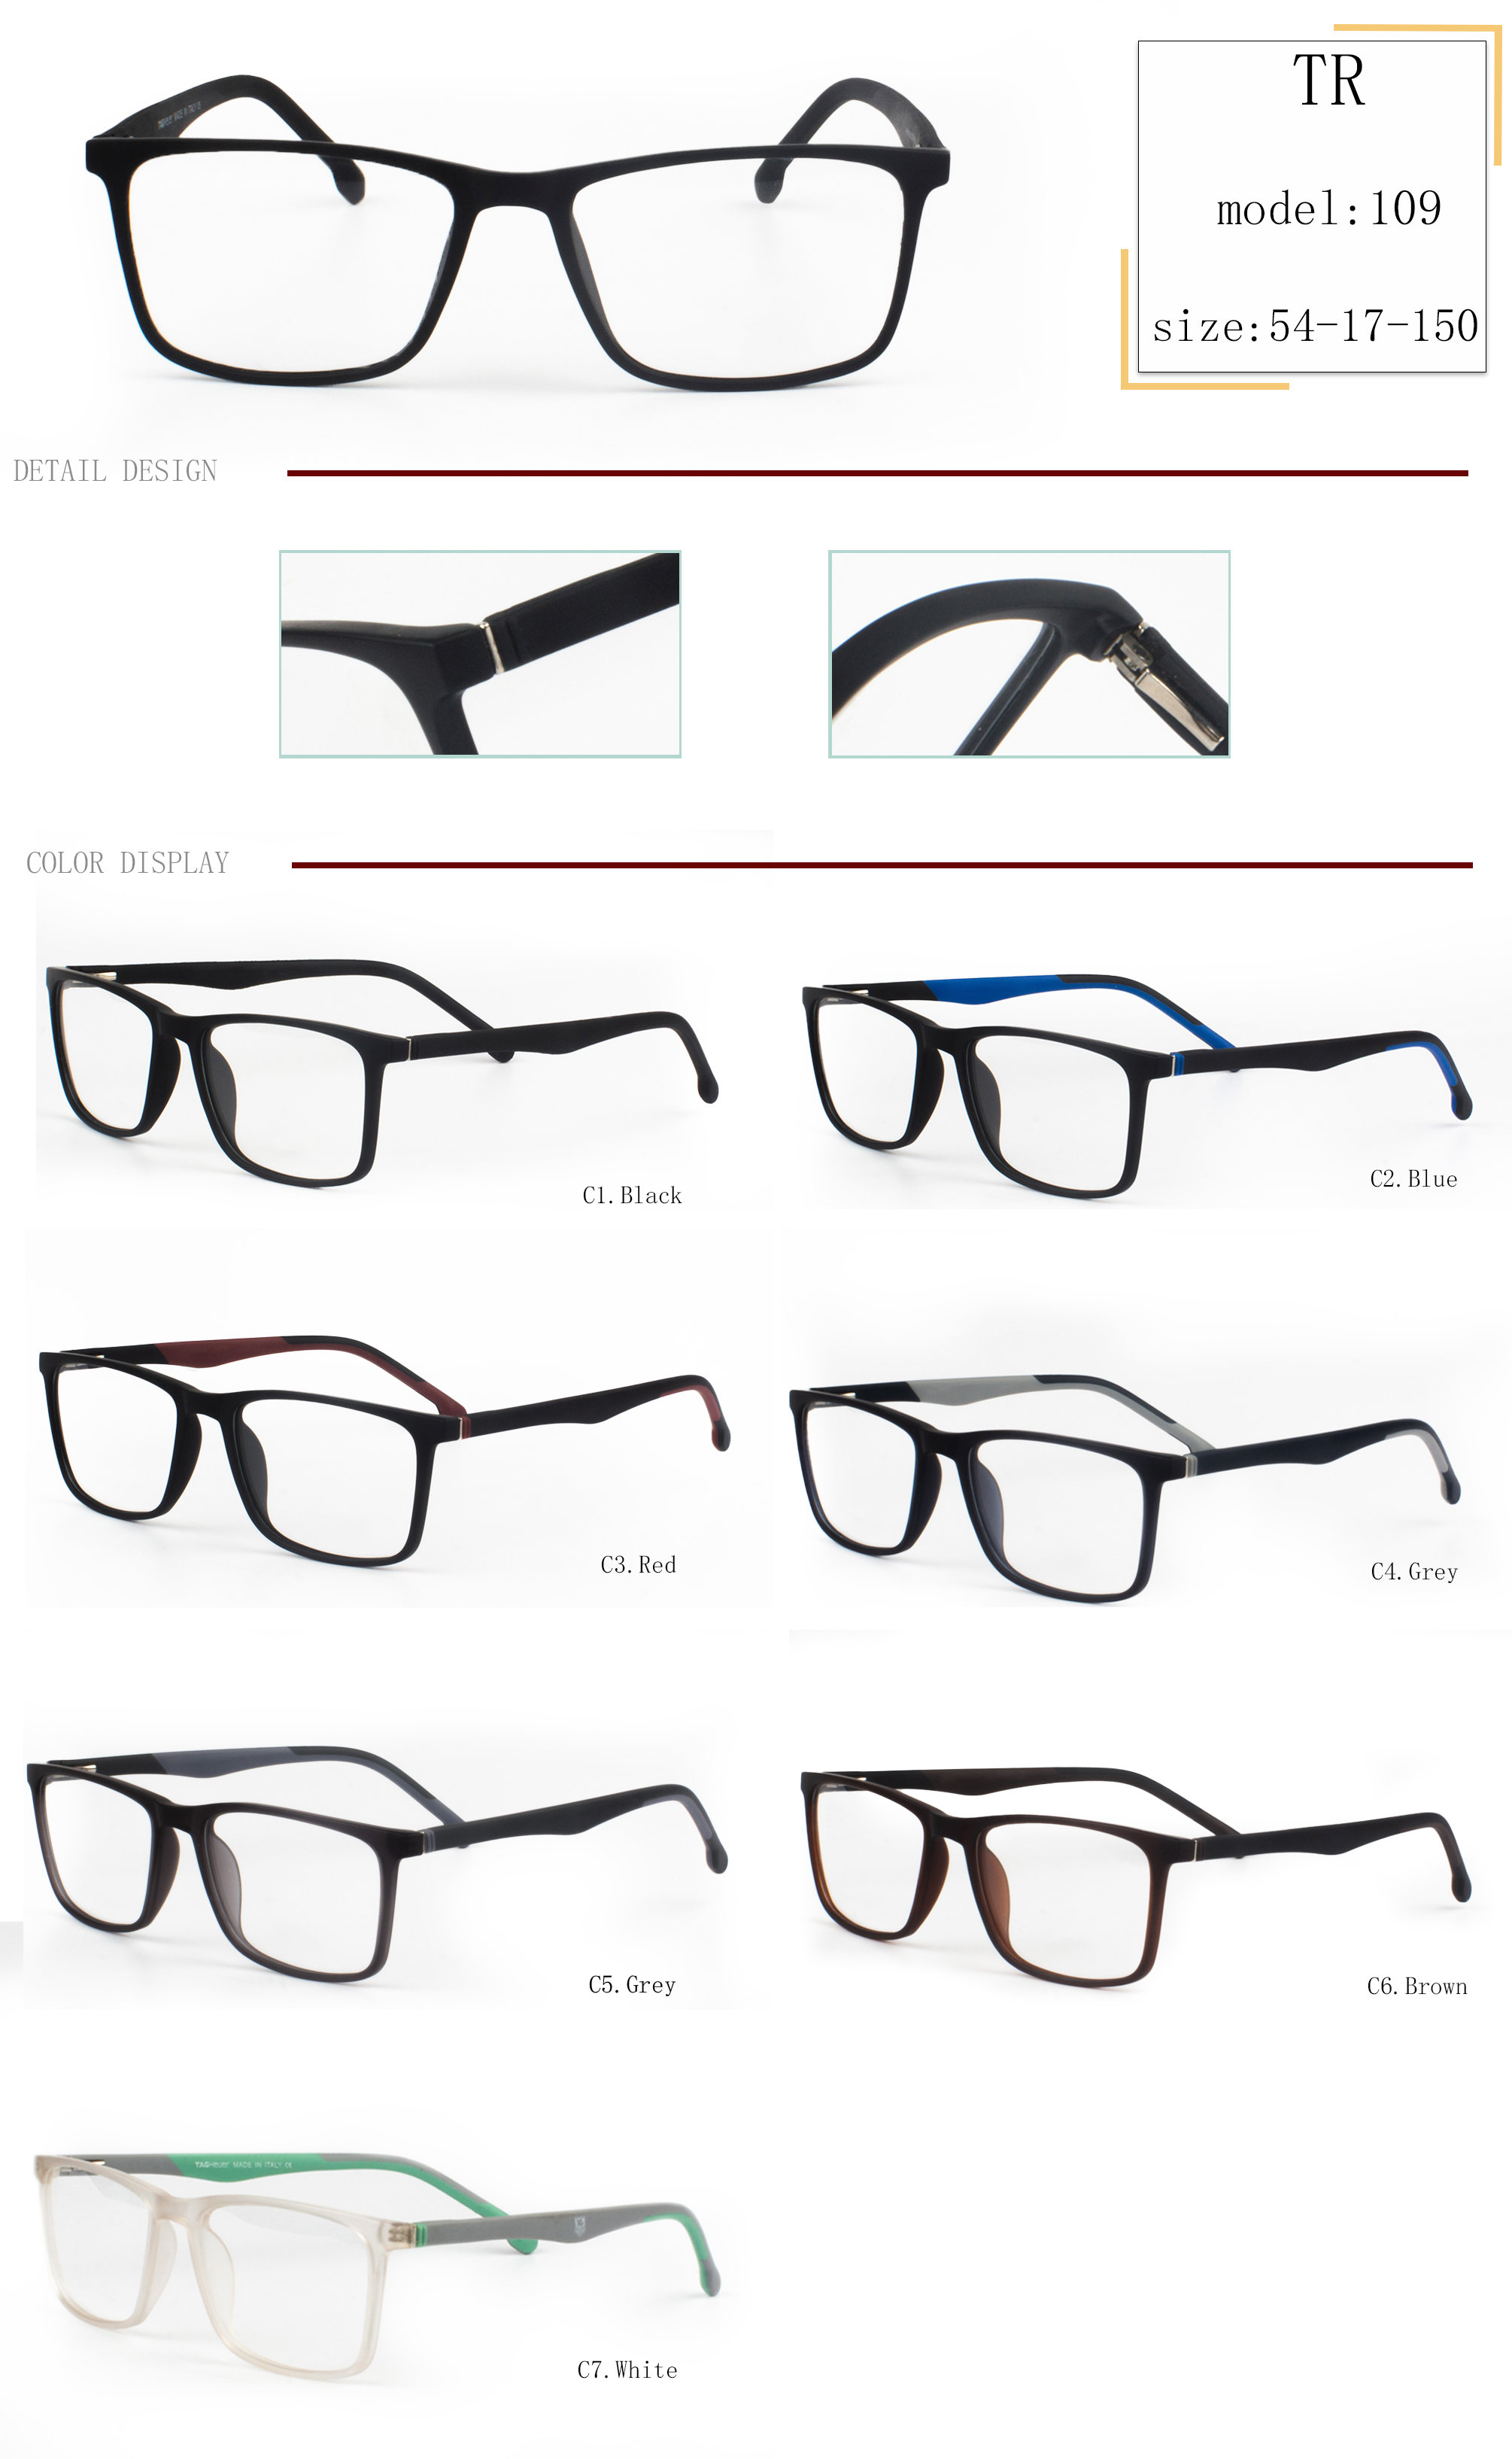 velkoobchodní prodej obrouček na brýle